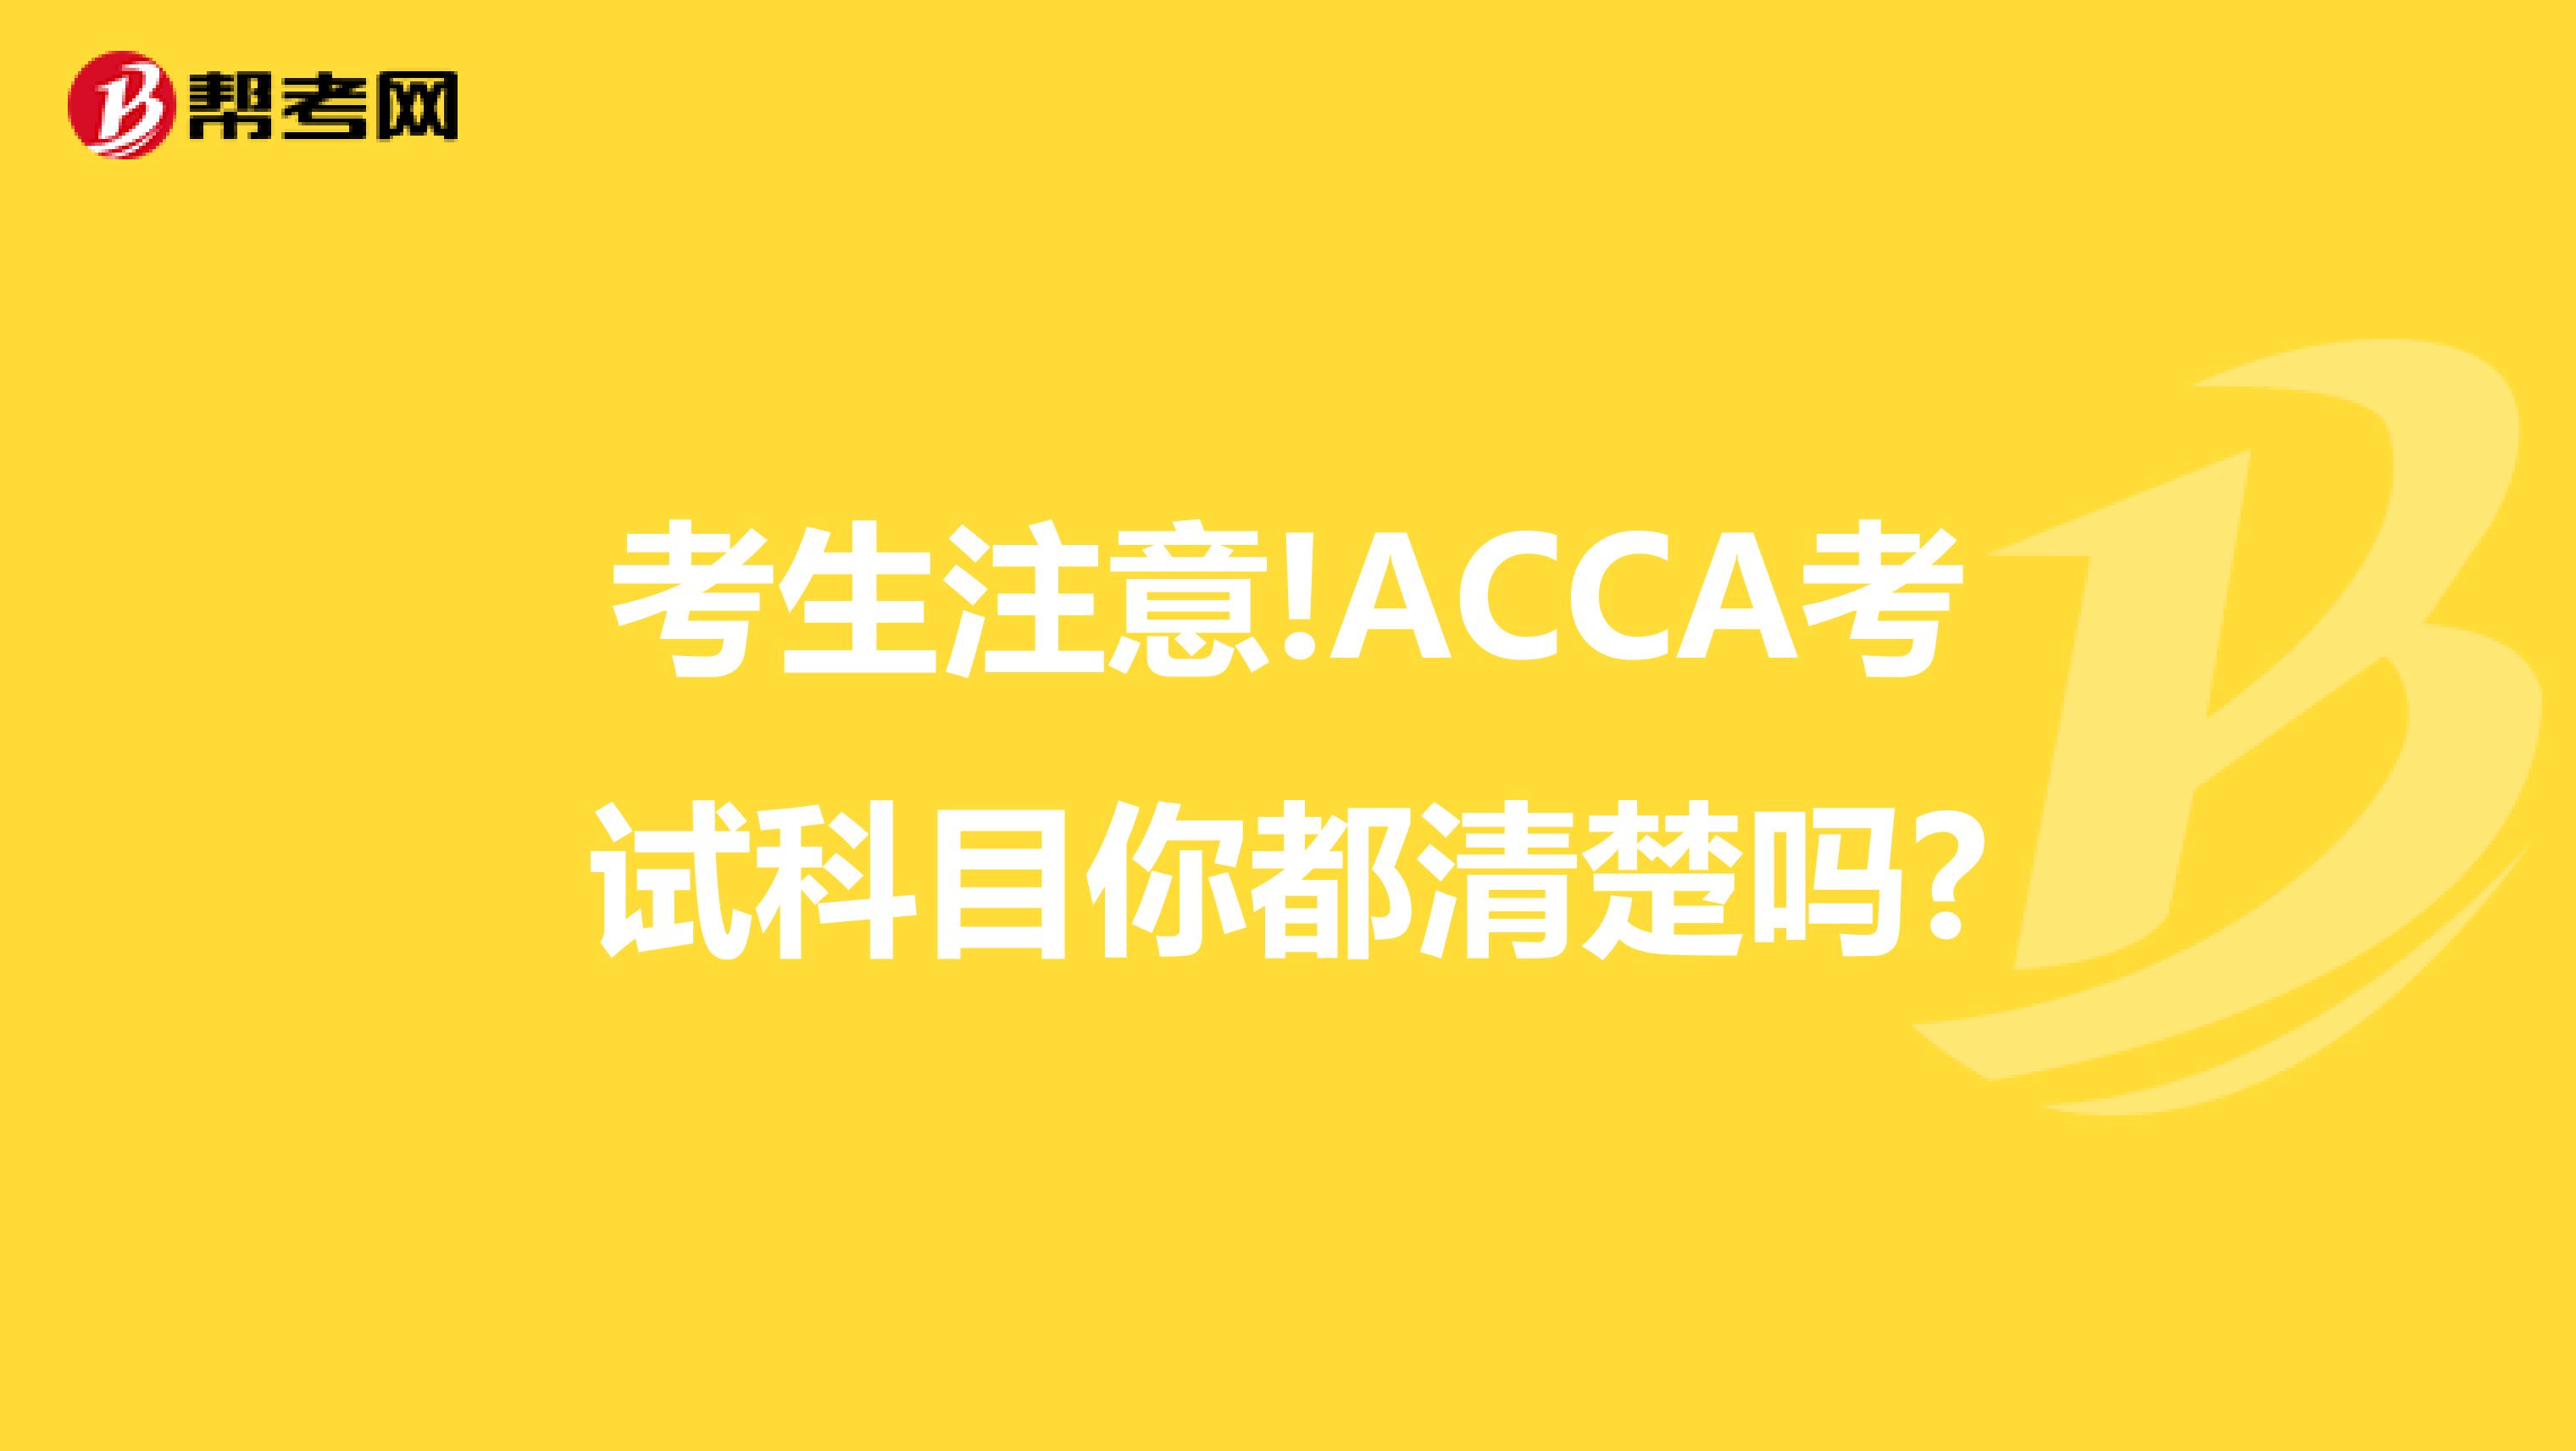 考生注意!ACCA考试科目你都清楚吗?